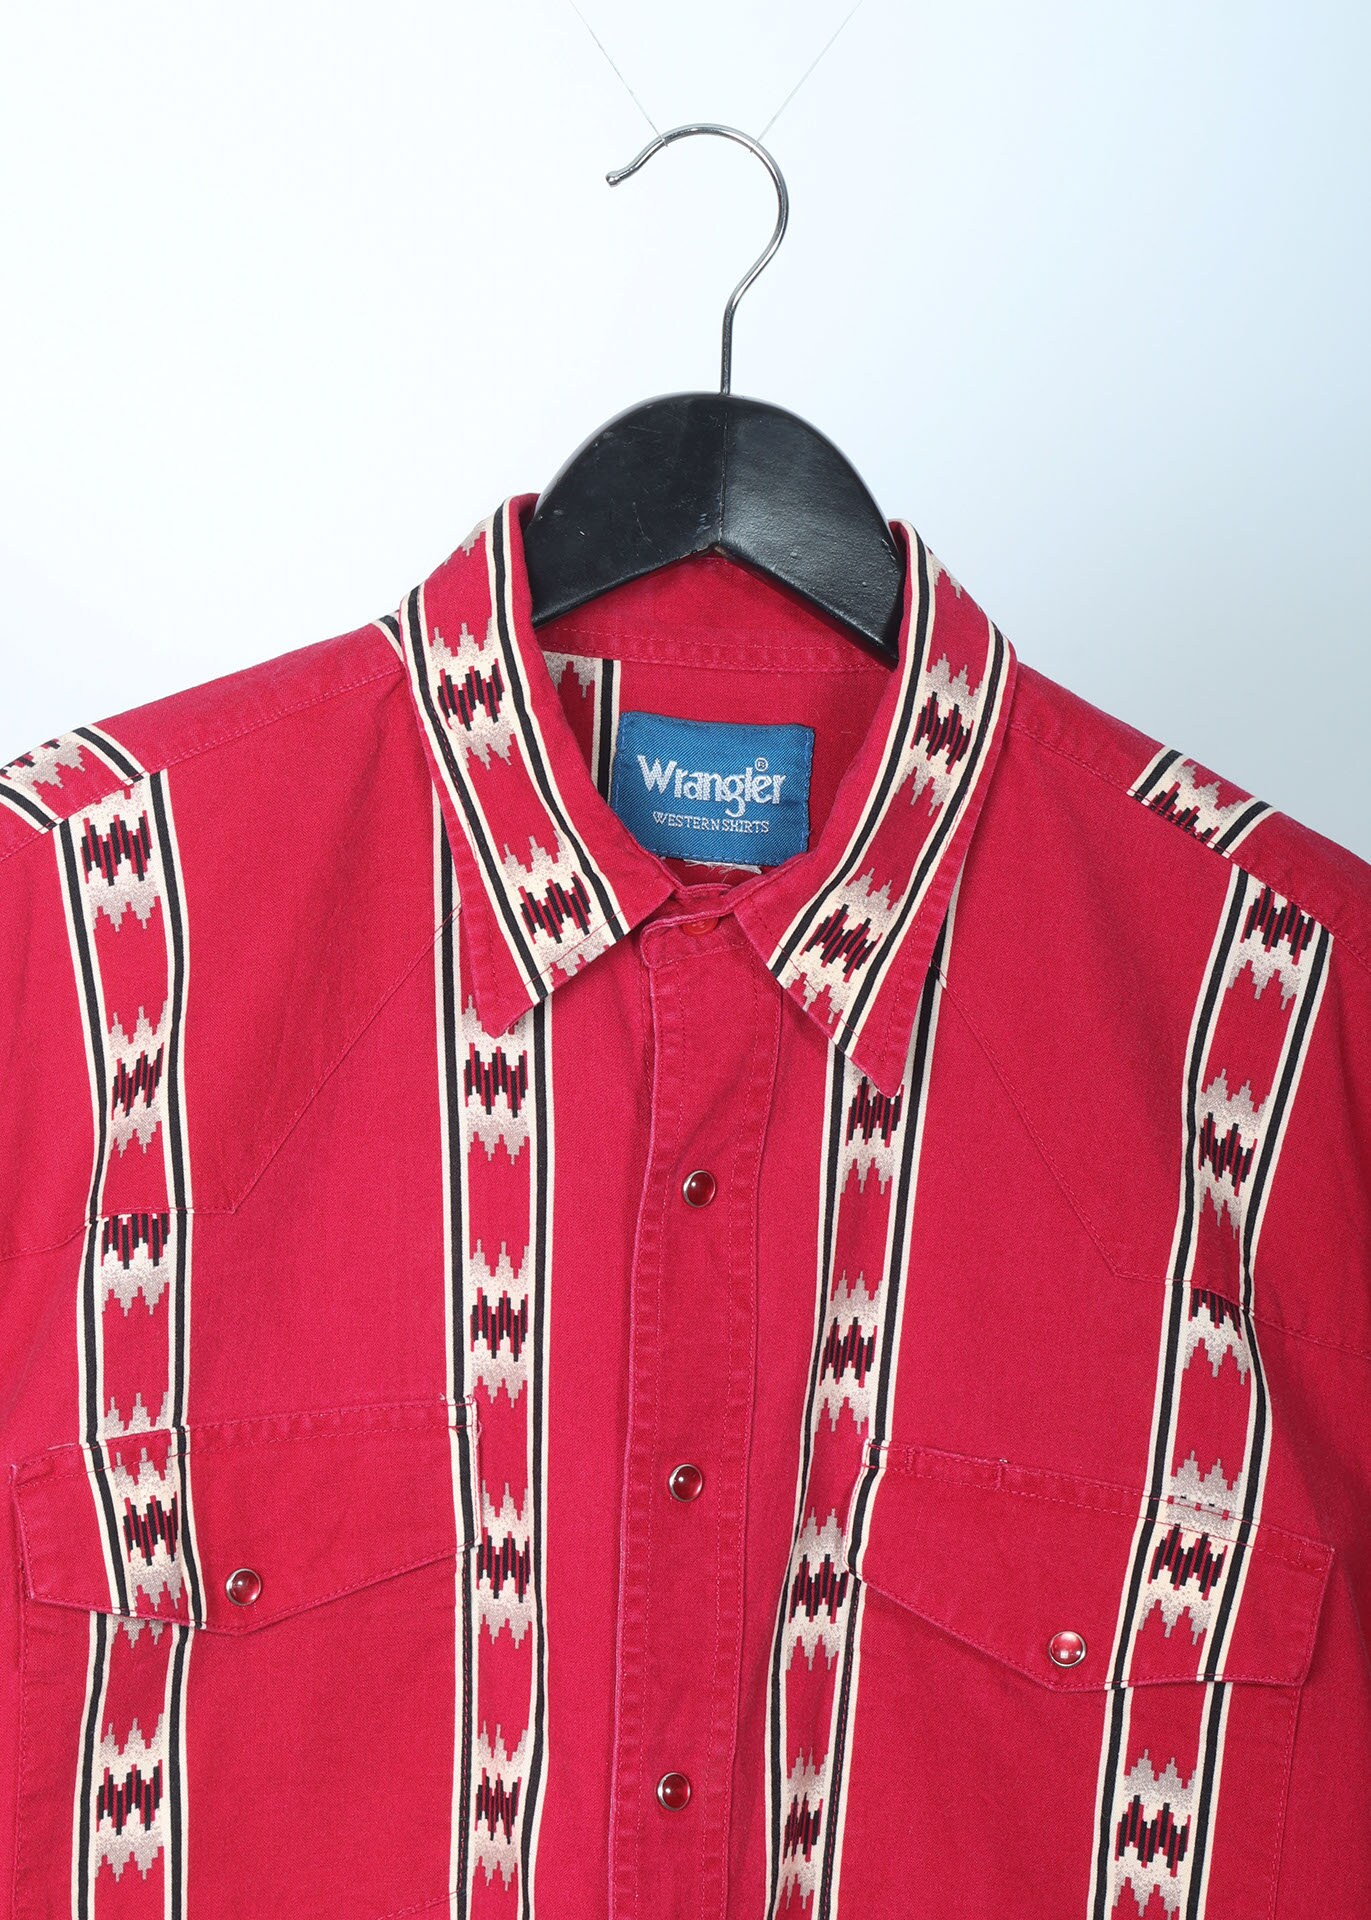 Vintage Wrangler Western Shirt Size XL - Etsy UK